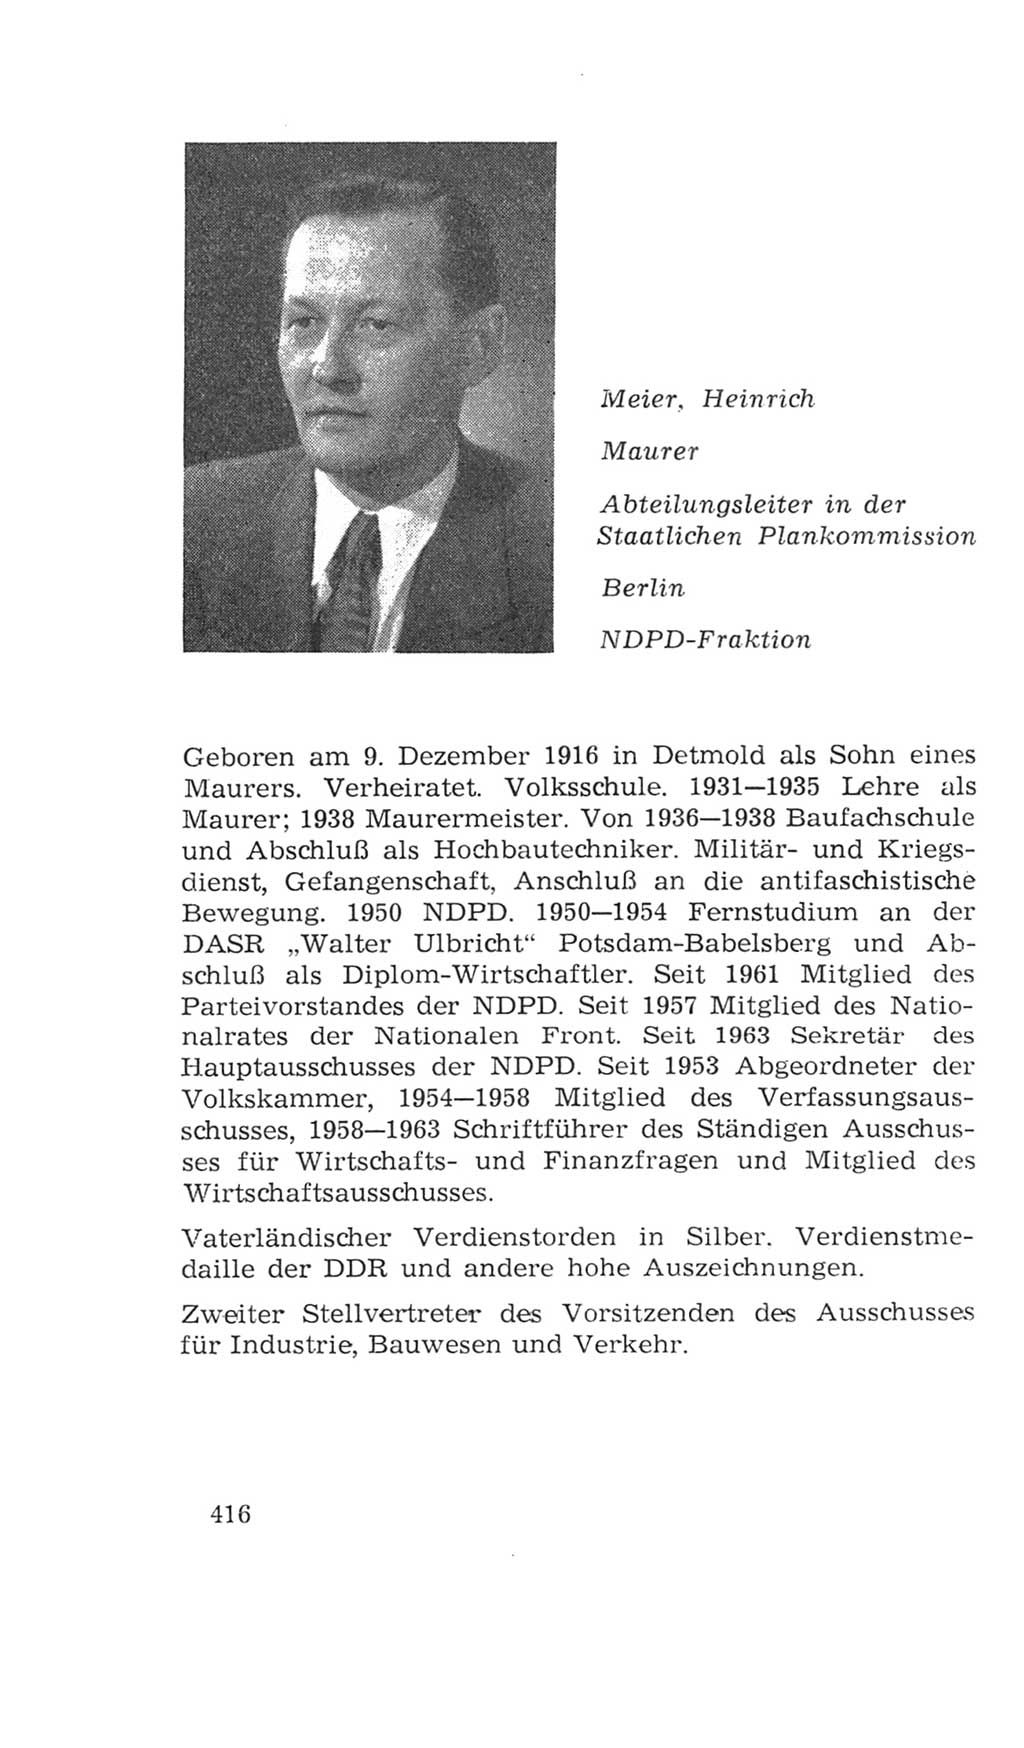 Volkskammer (VK) der Deutschen Demokratischen Republik (DDR), 4. Wahlperiode 1963-1967, Seite 416 (VK. DDR 4. WP. 1963-1967, S. 416)